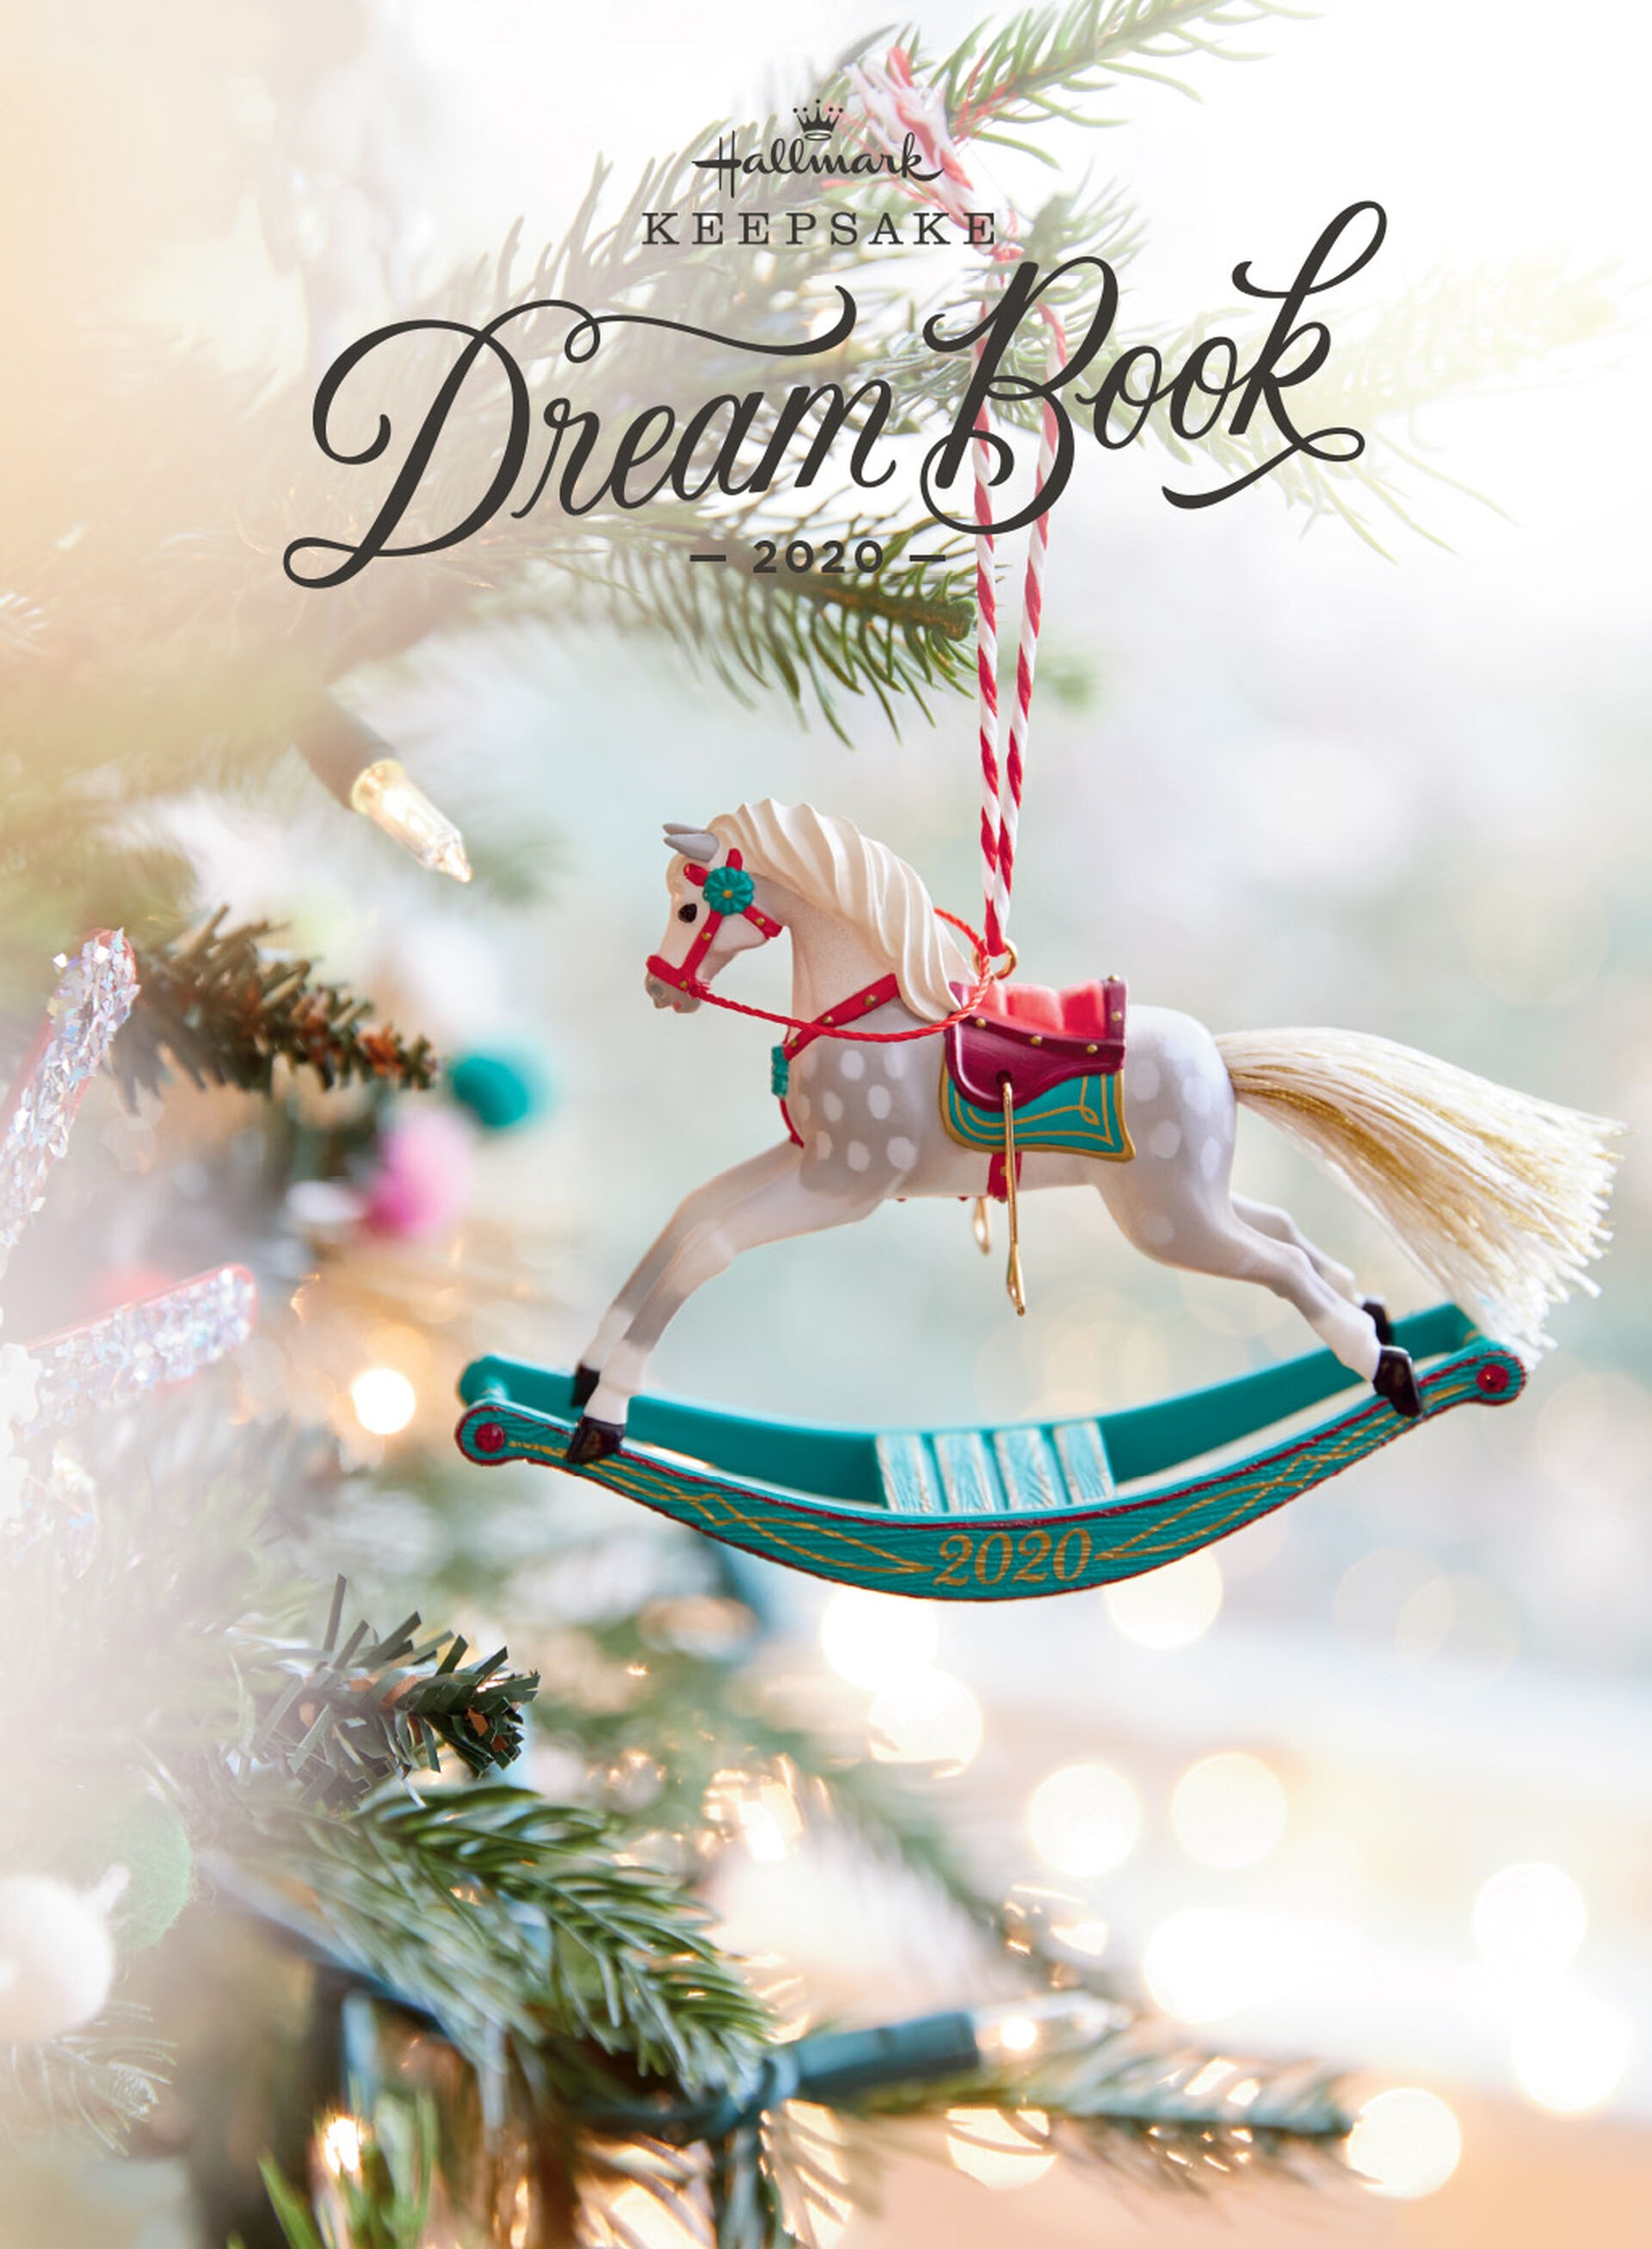 Hallmark Dream Book 2022 Browse Keepsake Ornaments Online Hallmark